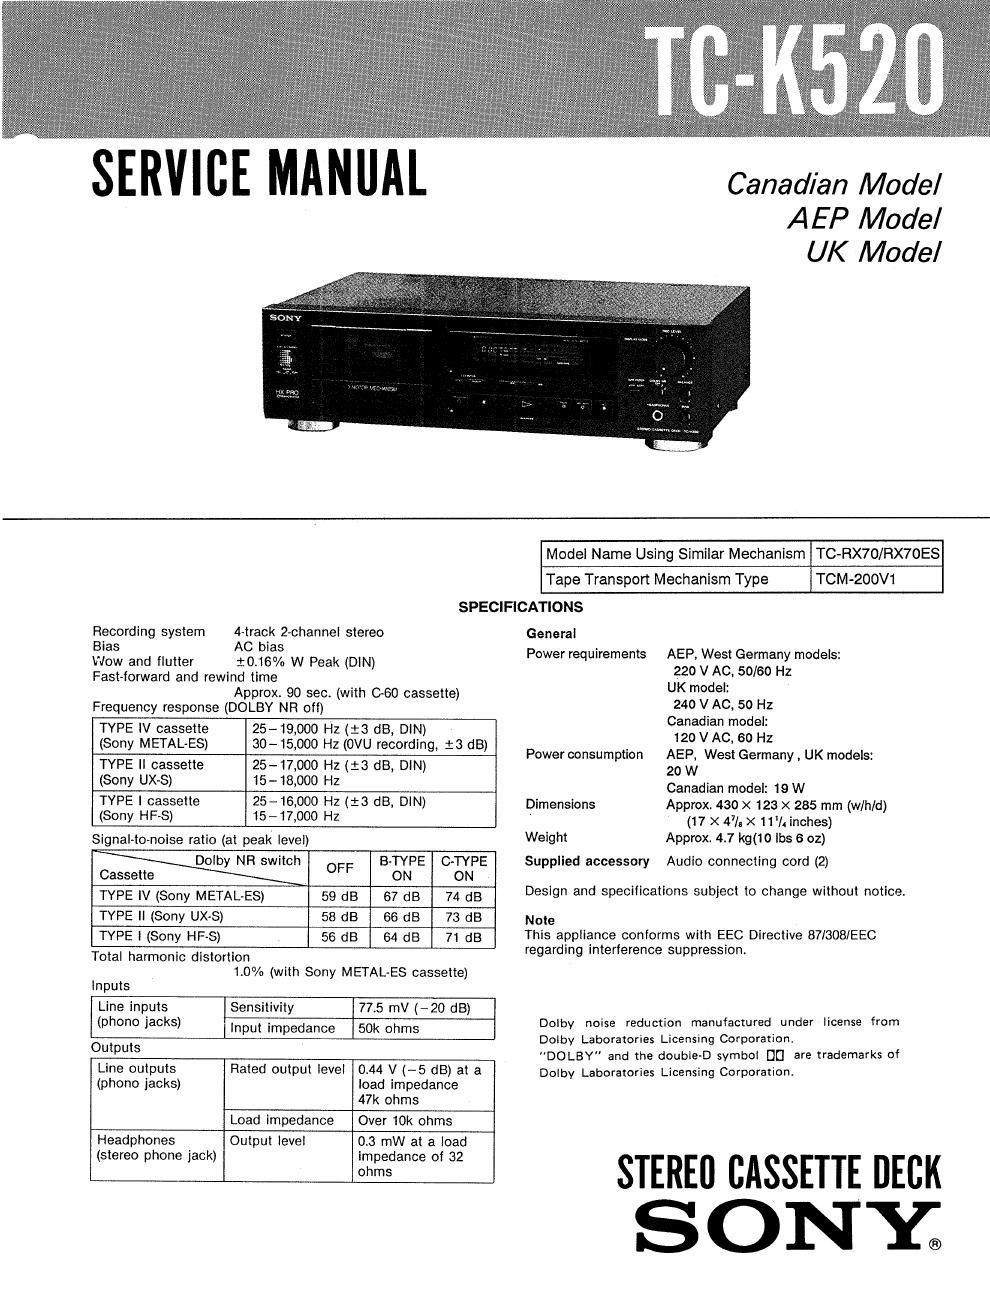 sony tc k 520 service manual